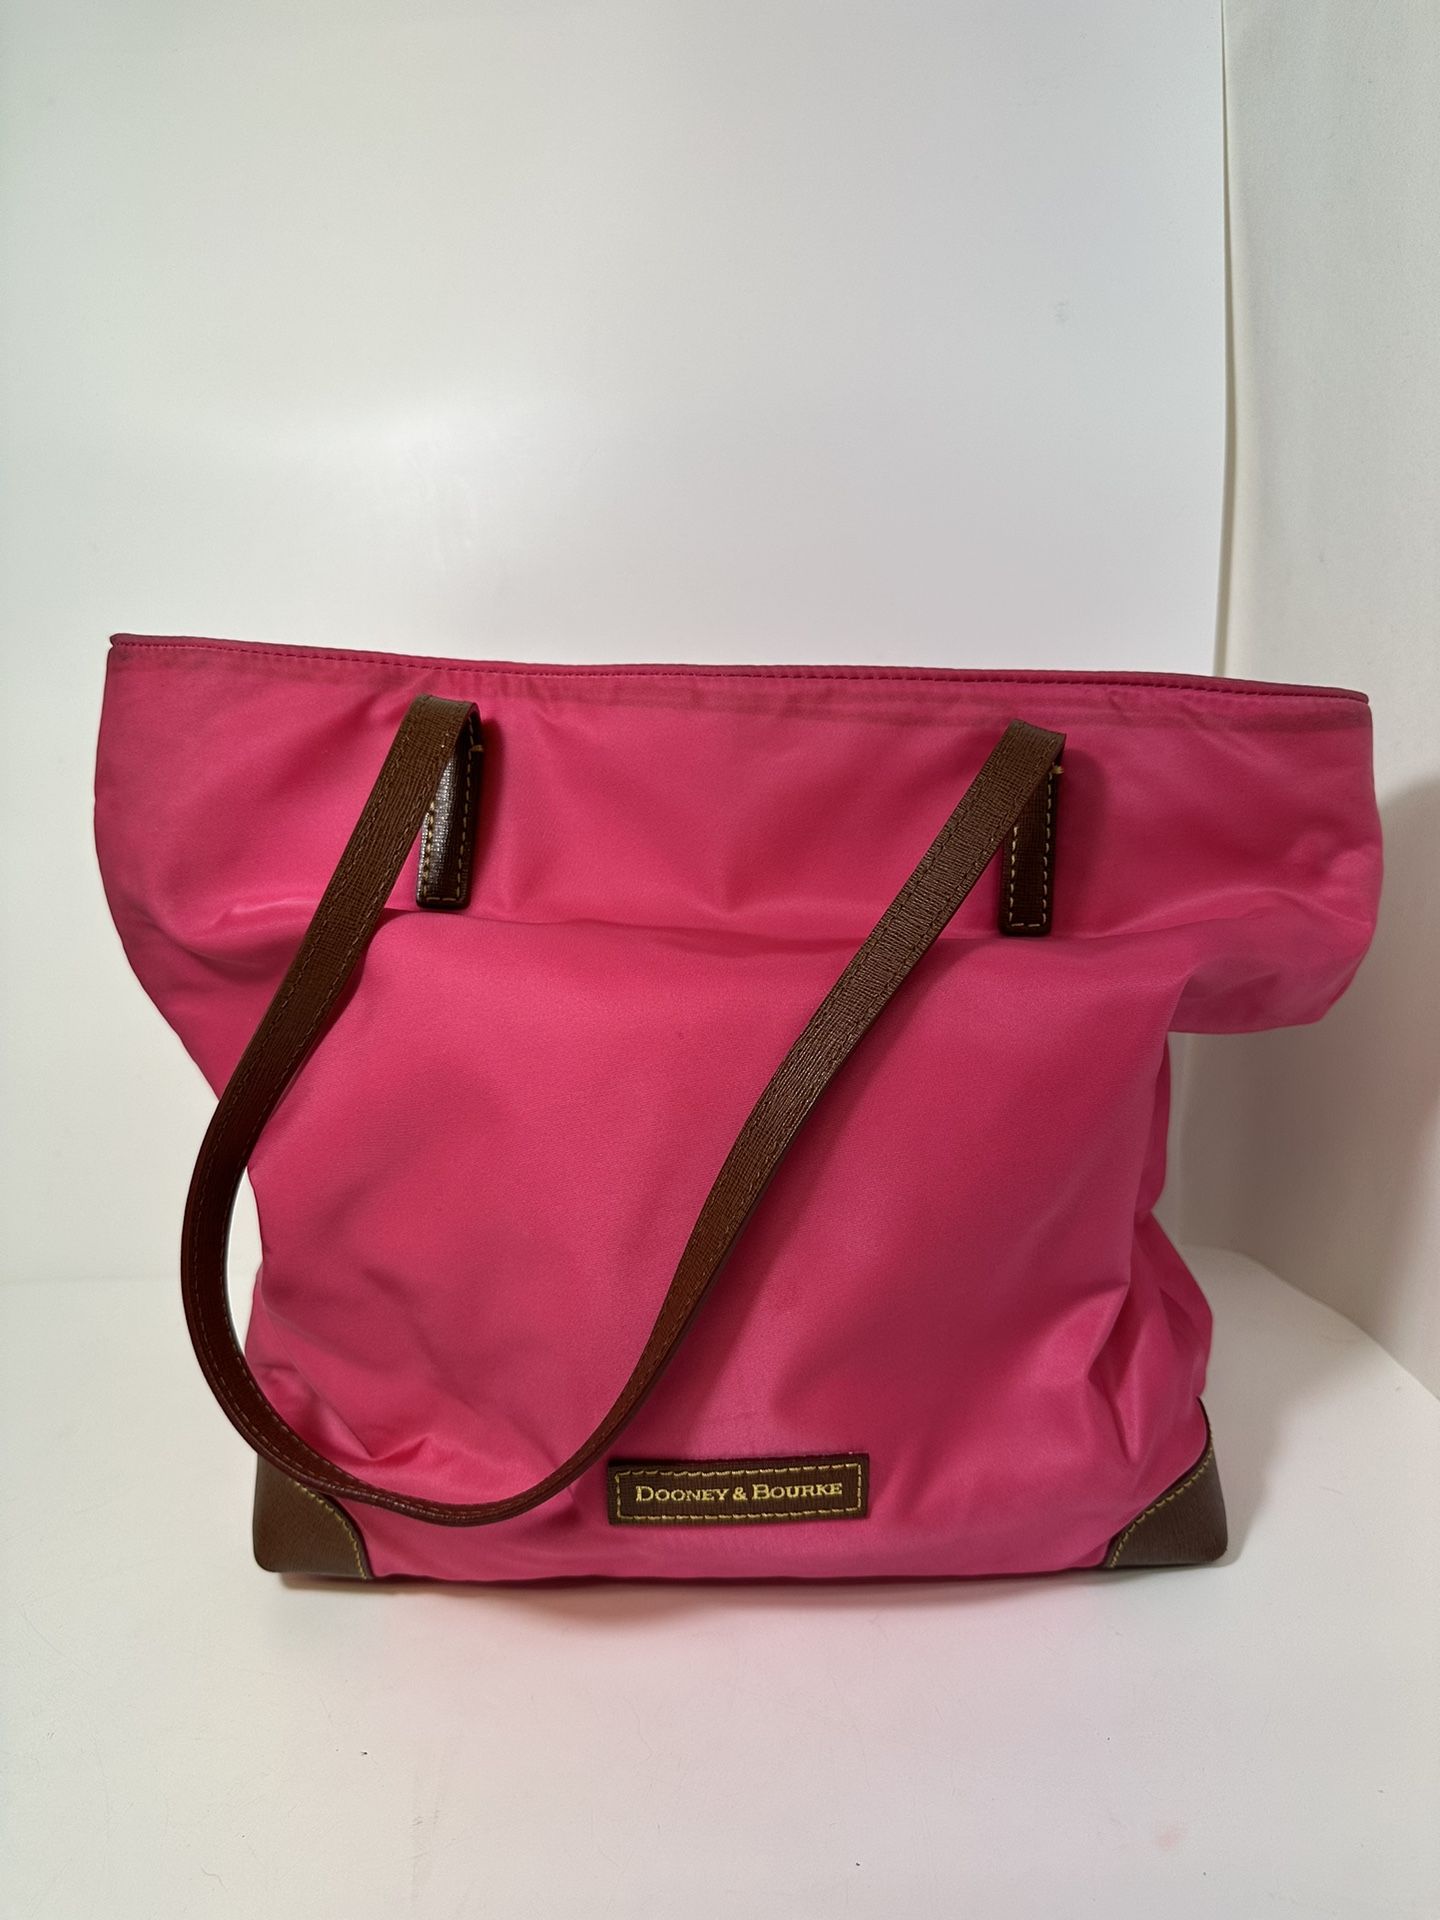 Dooney & Bourke Pink Satchel Tote Zip Bag Purse, NEW